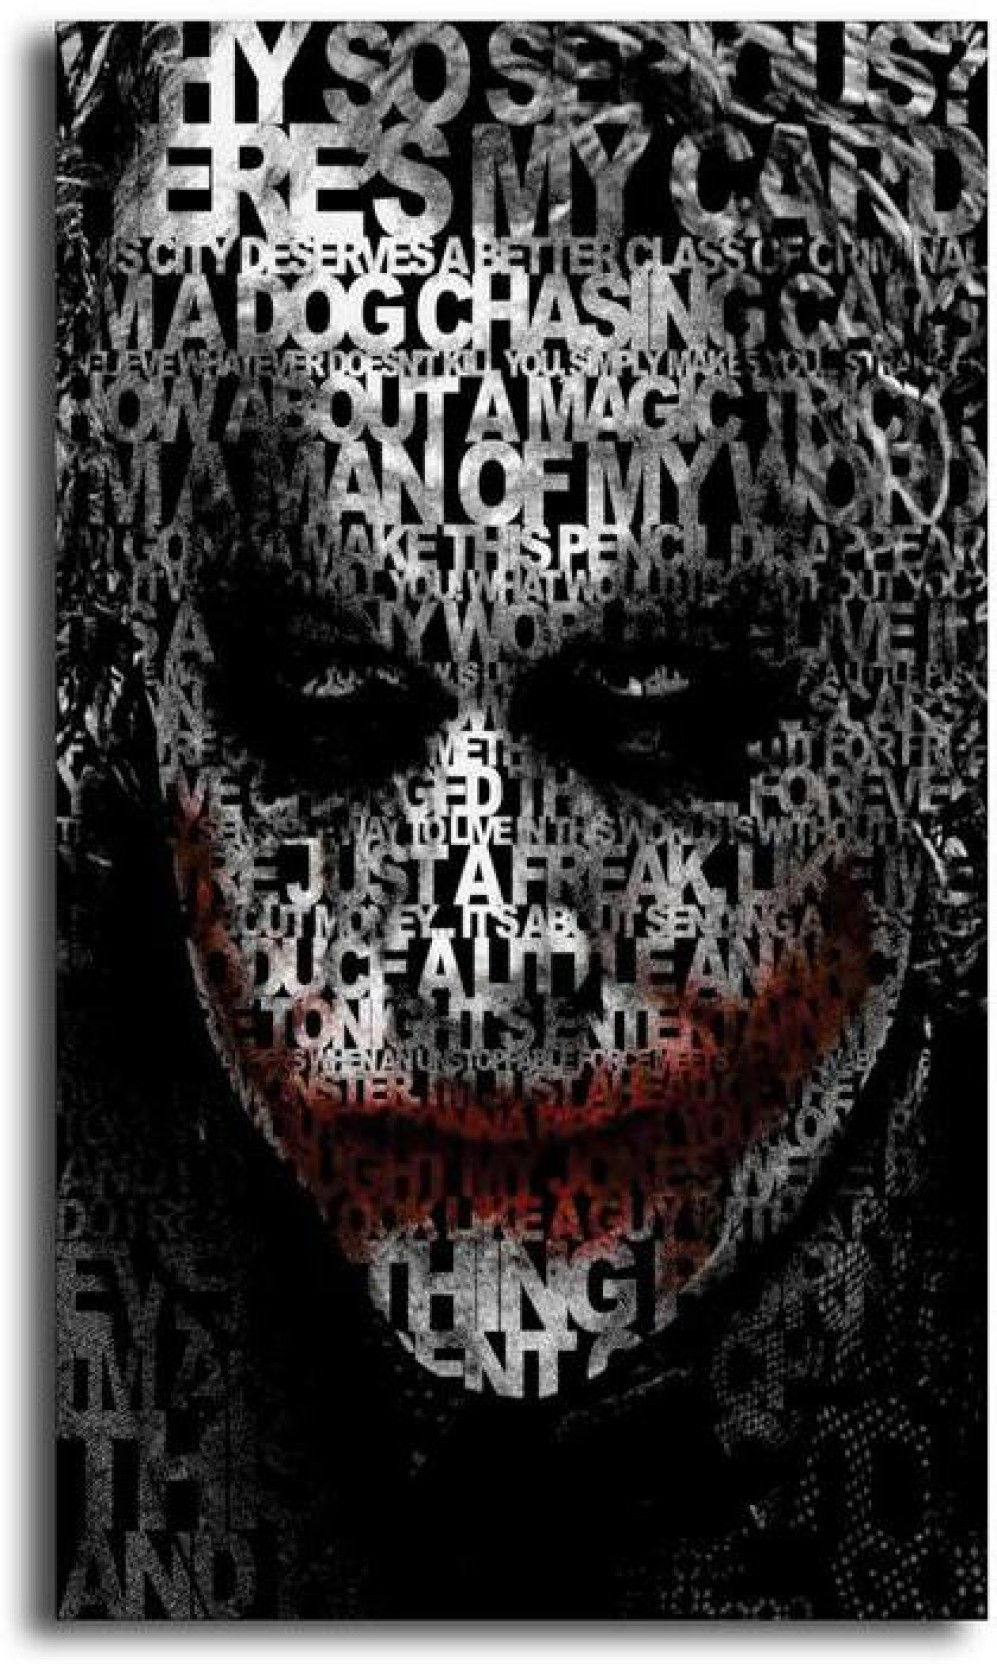 Heath Ledger Joker 3d - 997x1664 Wallpaper 